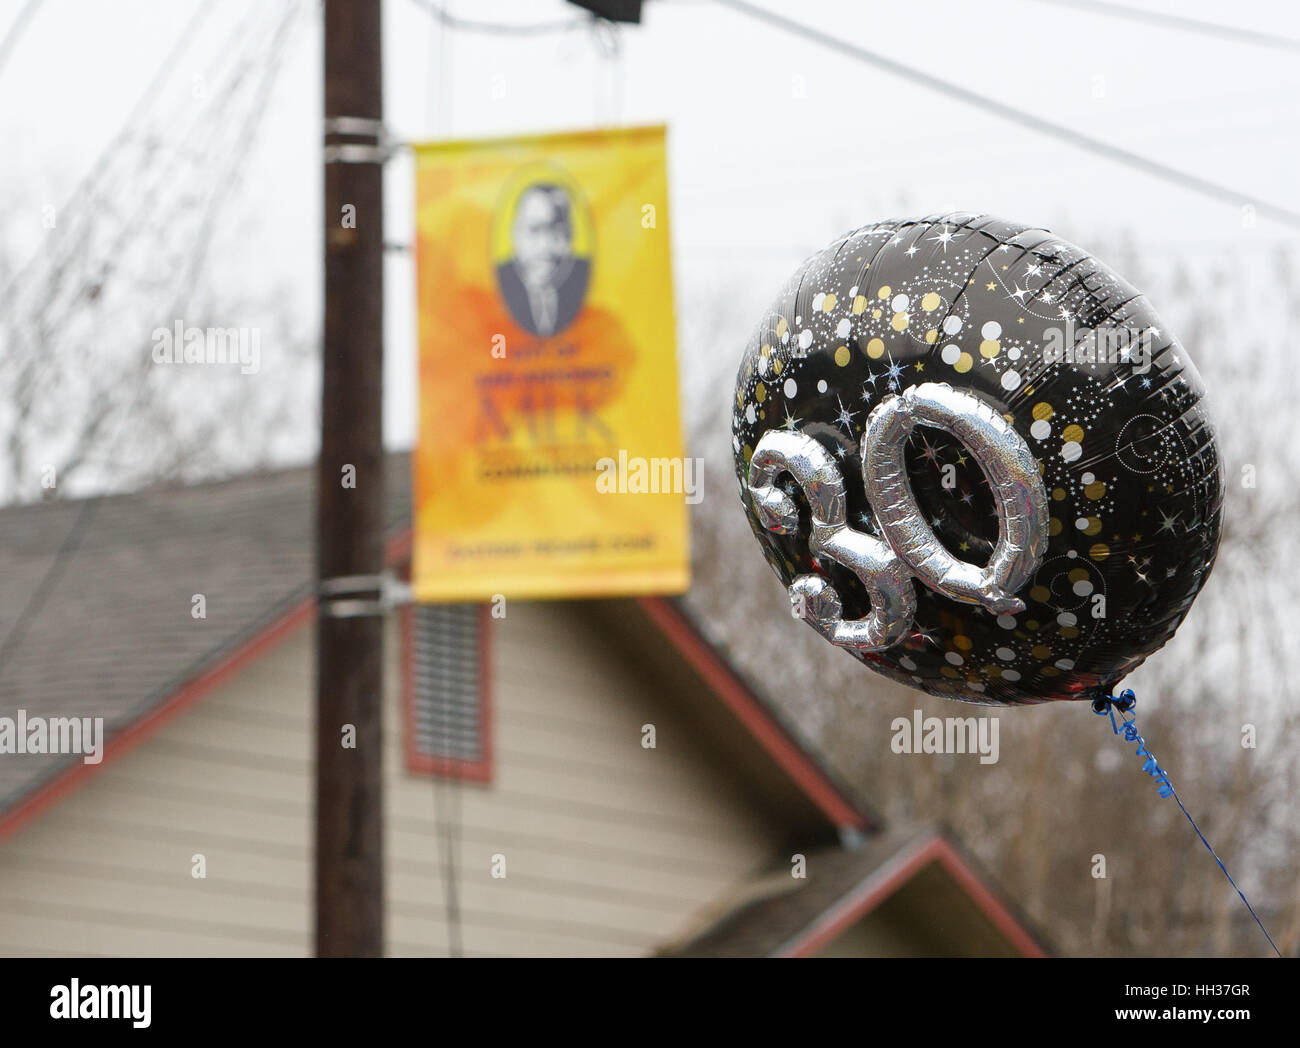 San Antonio, USA. 16. Januar 2017. Ein Ballon, getragen von einem Marcher betont den 30. Jahrestag der jährlichen Martin Luther King Jr. März in San Antonio, Texas. Mehrere tausend Menschen besuchten die Stadt 30. Jahrestag März feiert US-Bürgerrechtler Martin Luther King, Jr. Credit: Michael Silber/Alamy Live News Stockfoto